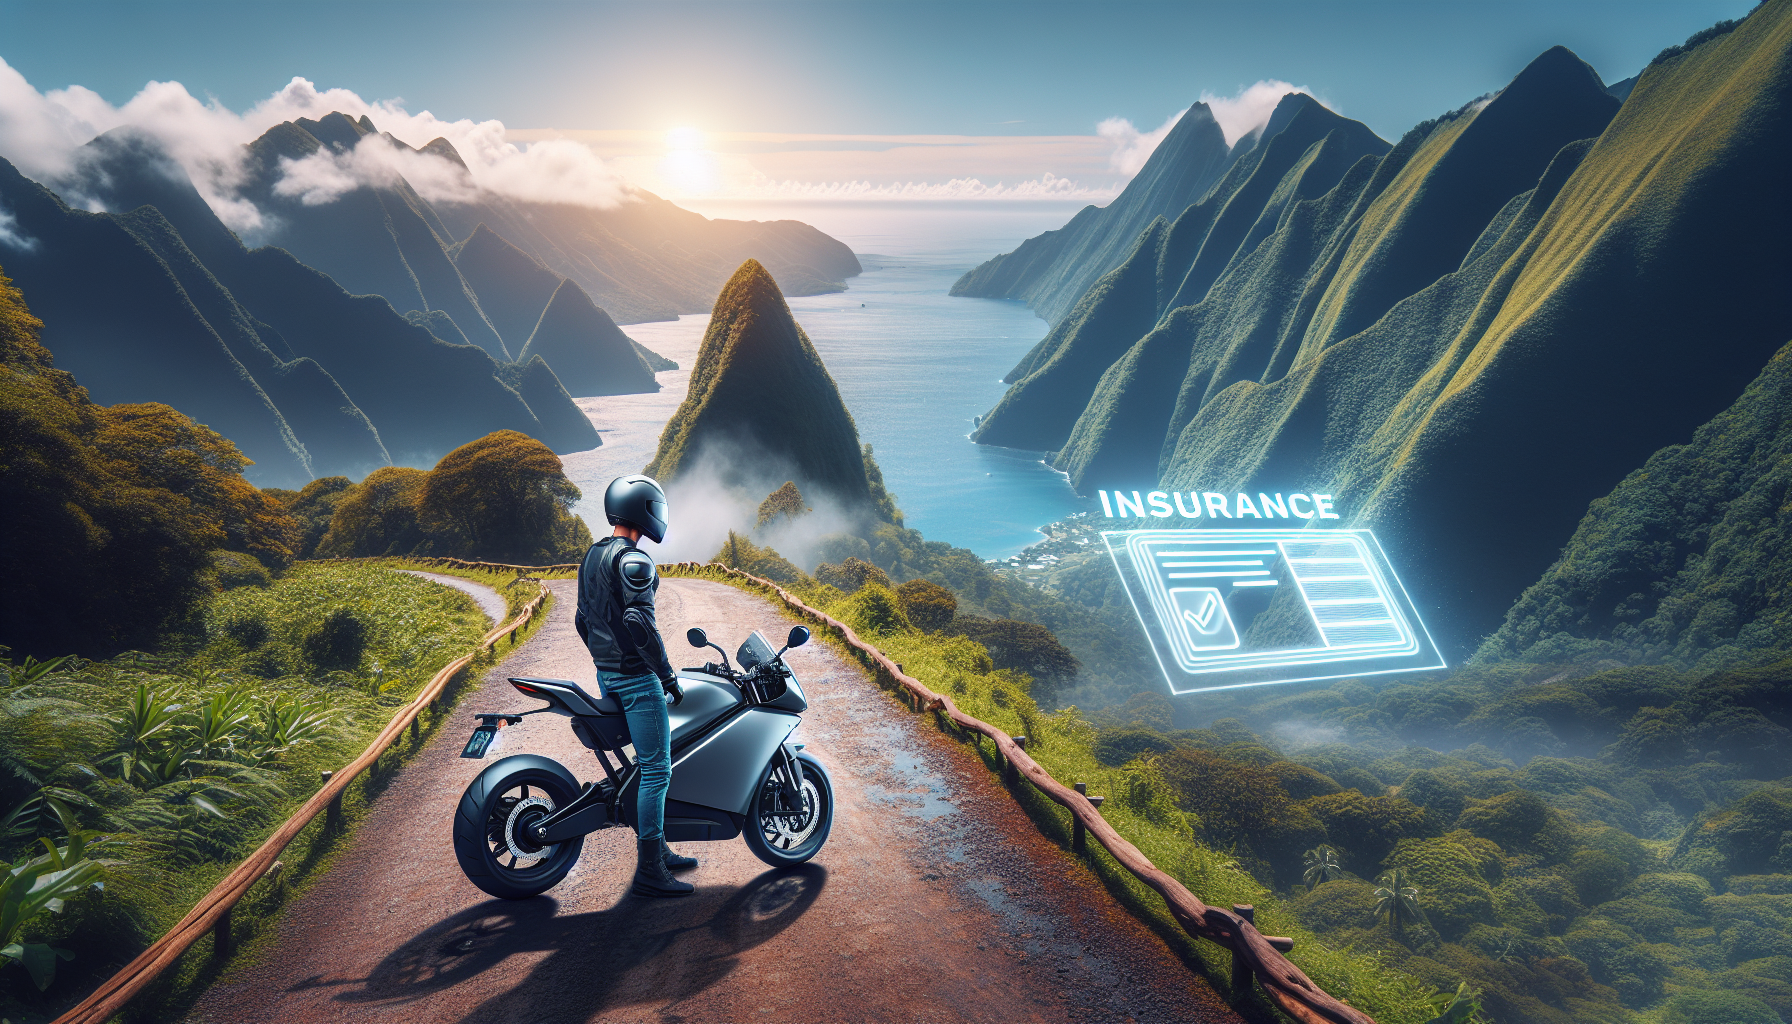 découvrez les avantages de choisir une assurance pour moto électrique à la réunion et assurez-vous de rouler en toute sécurité avec des garanties adaptées à vos besoins.